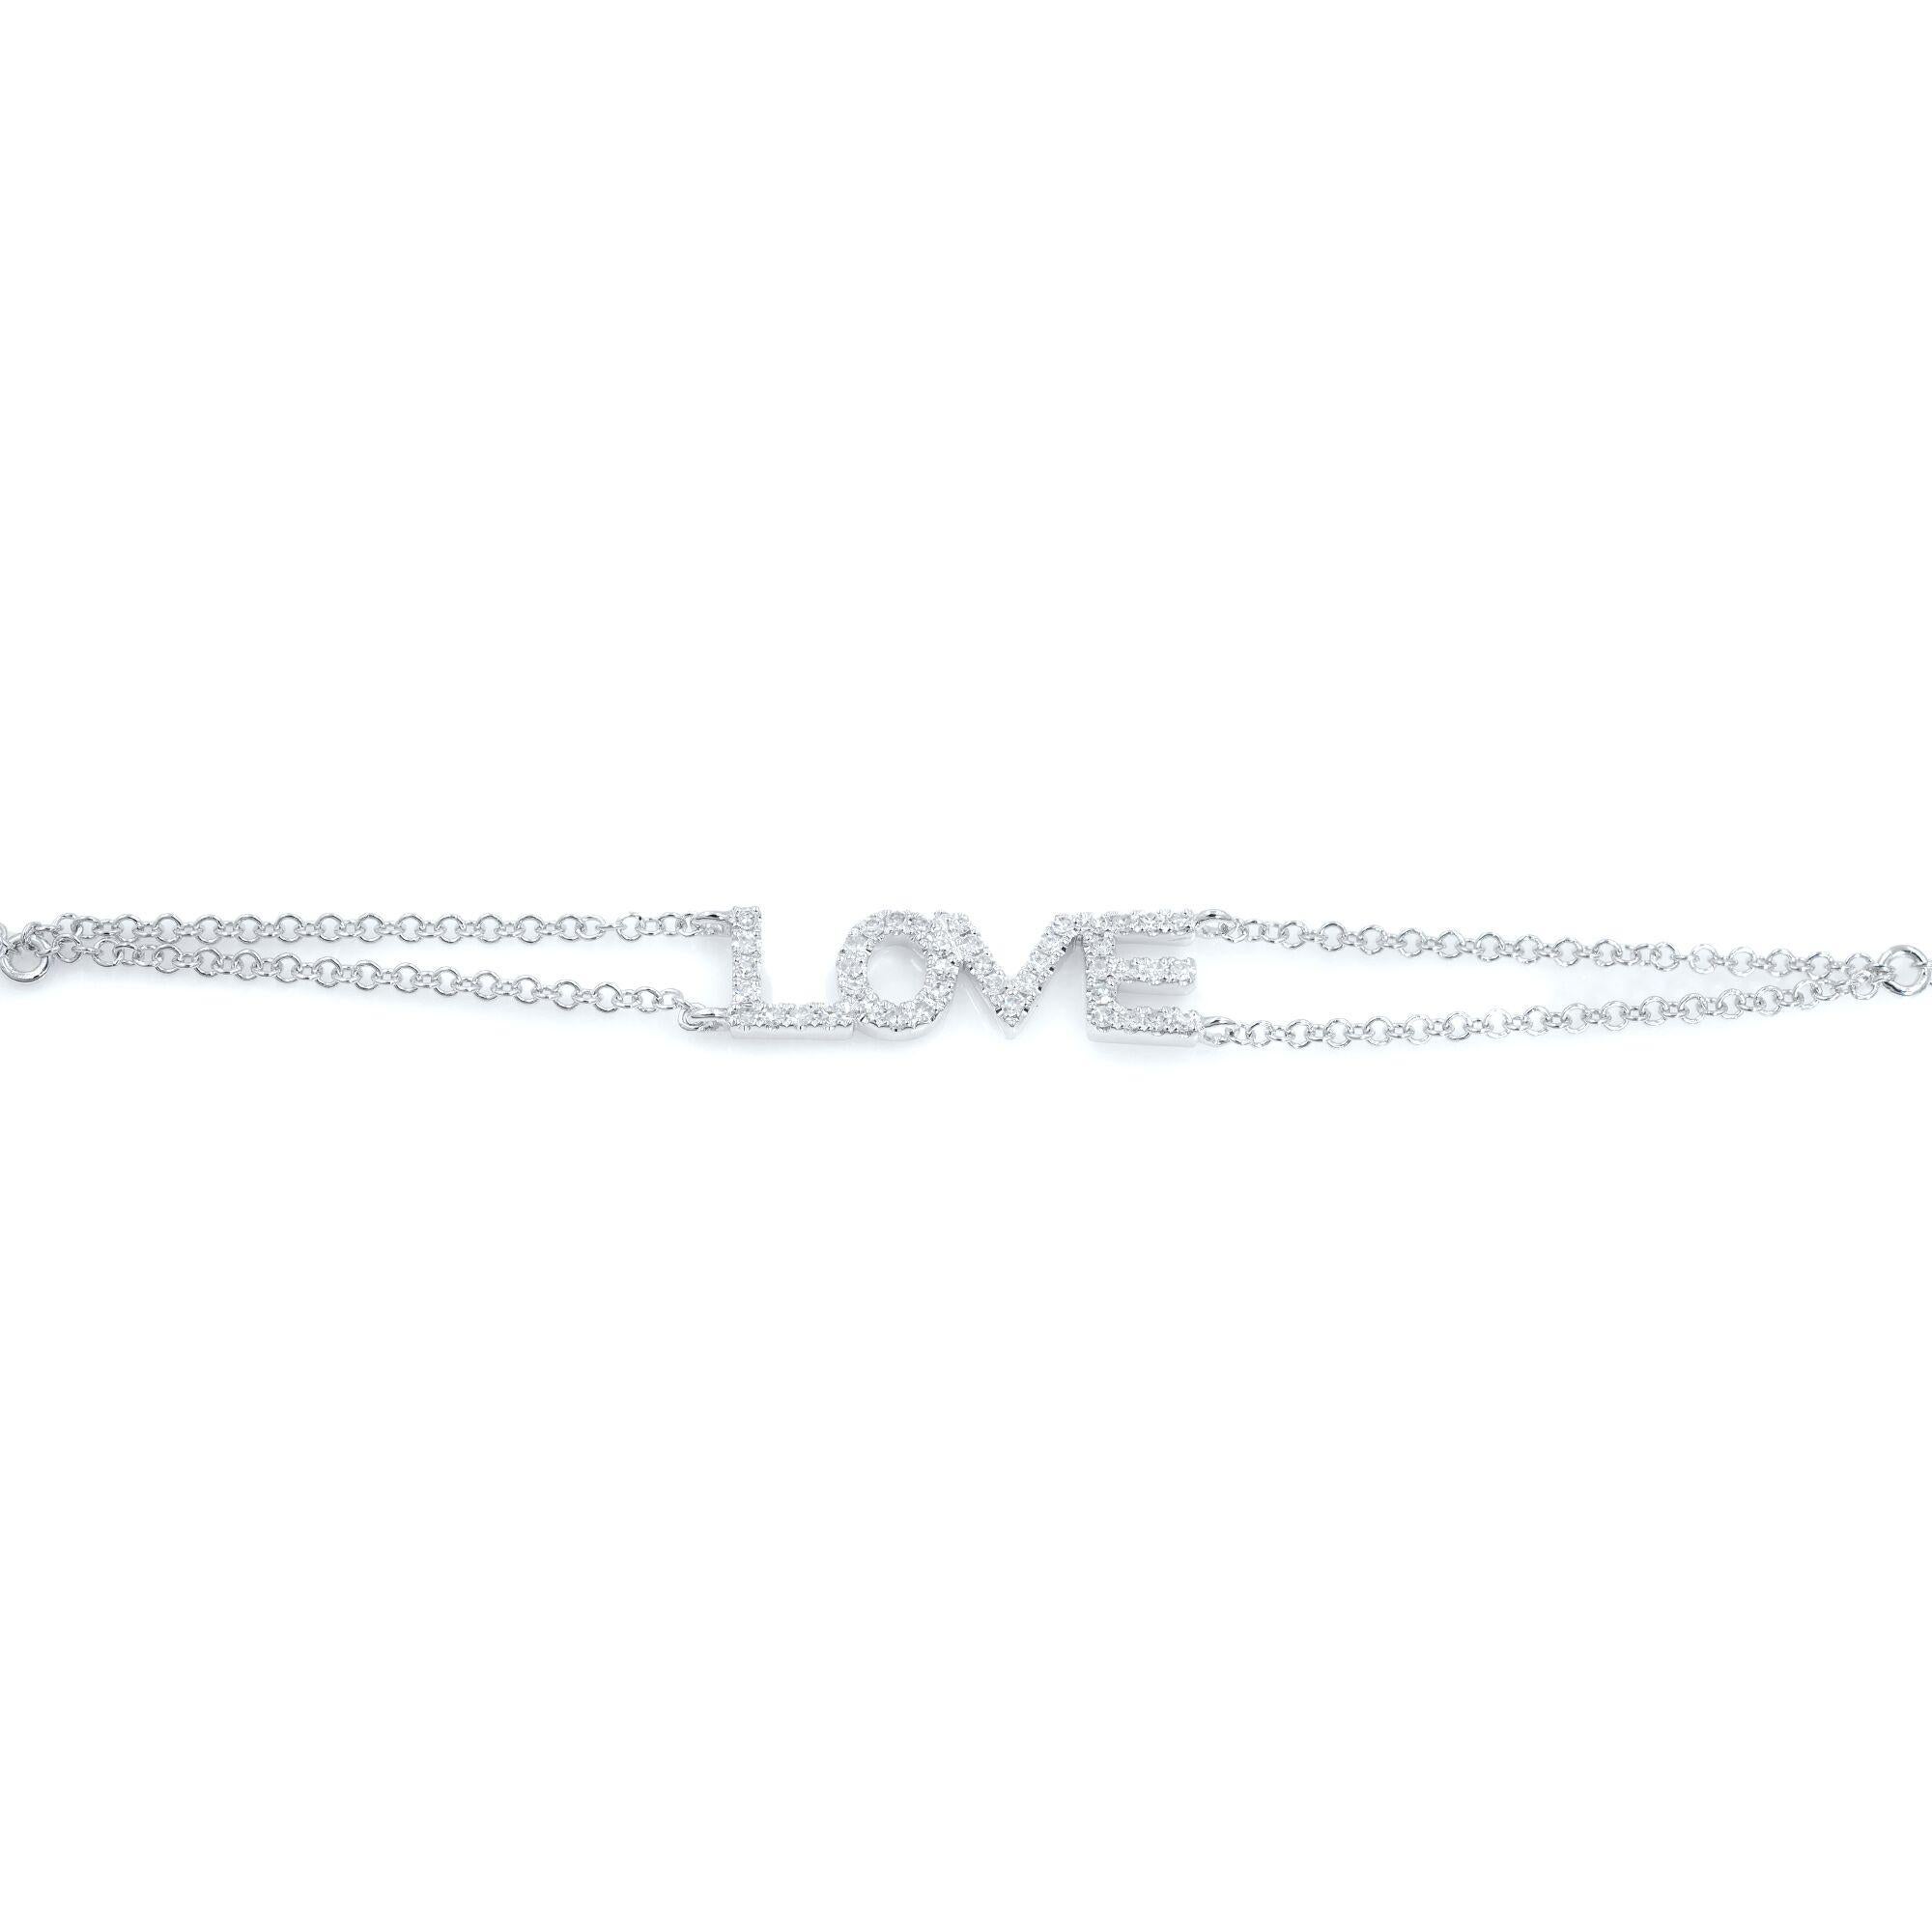 Modern Rachel Koen Diamond Love Chain Bracelet 18K White Gold 0.12cttw For Sale